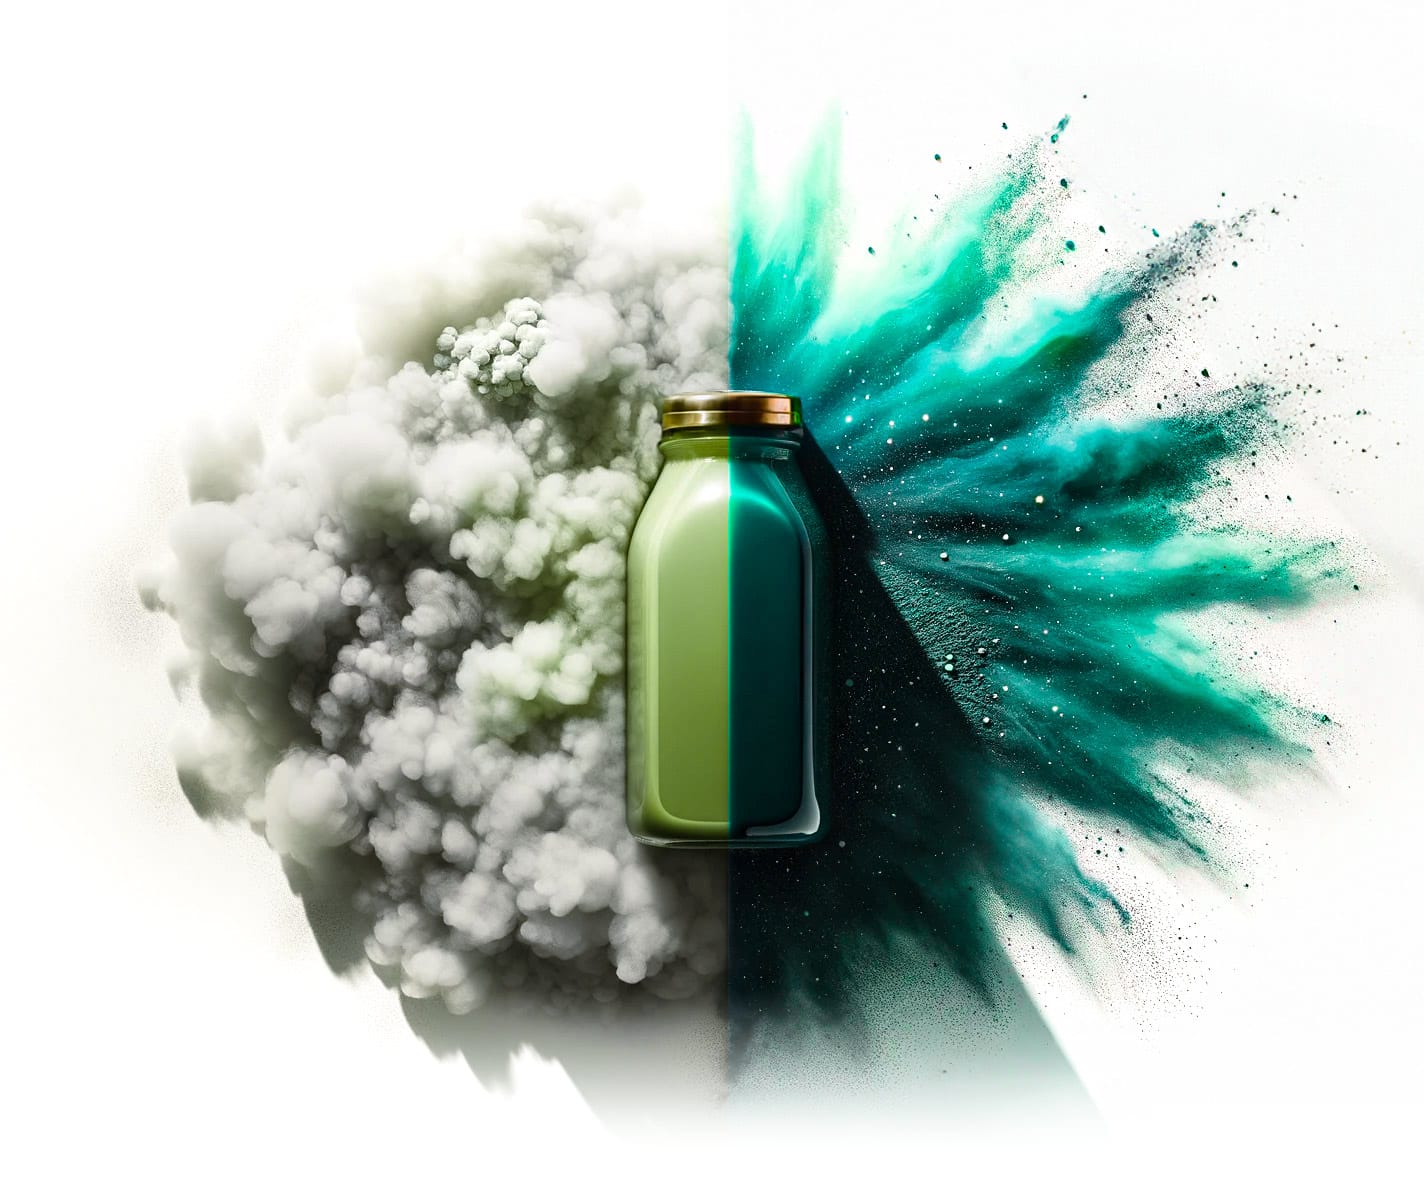 Photo représentative du produit liquide de spiruline de "the main ingredient company". Une moitié de l'image est mystérieuse avec des couleurs ternes, tandis que l'autre moitié est vive, évoquant la mer avec des teintes de vert et d'aquamarine, symbolisant la dualité des effets de la spiruline.